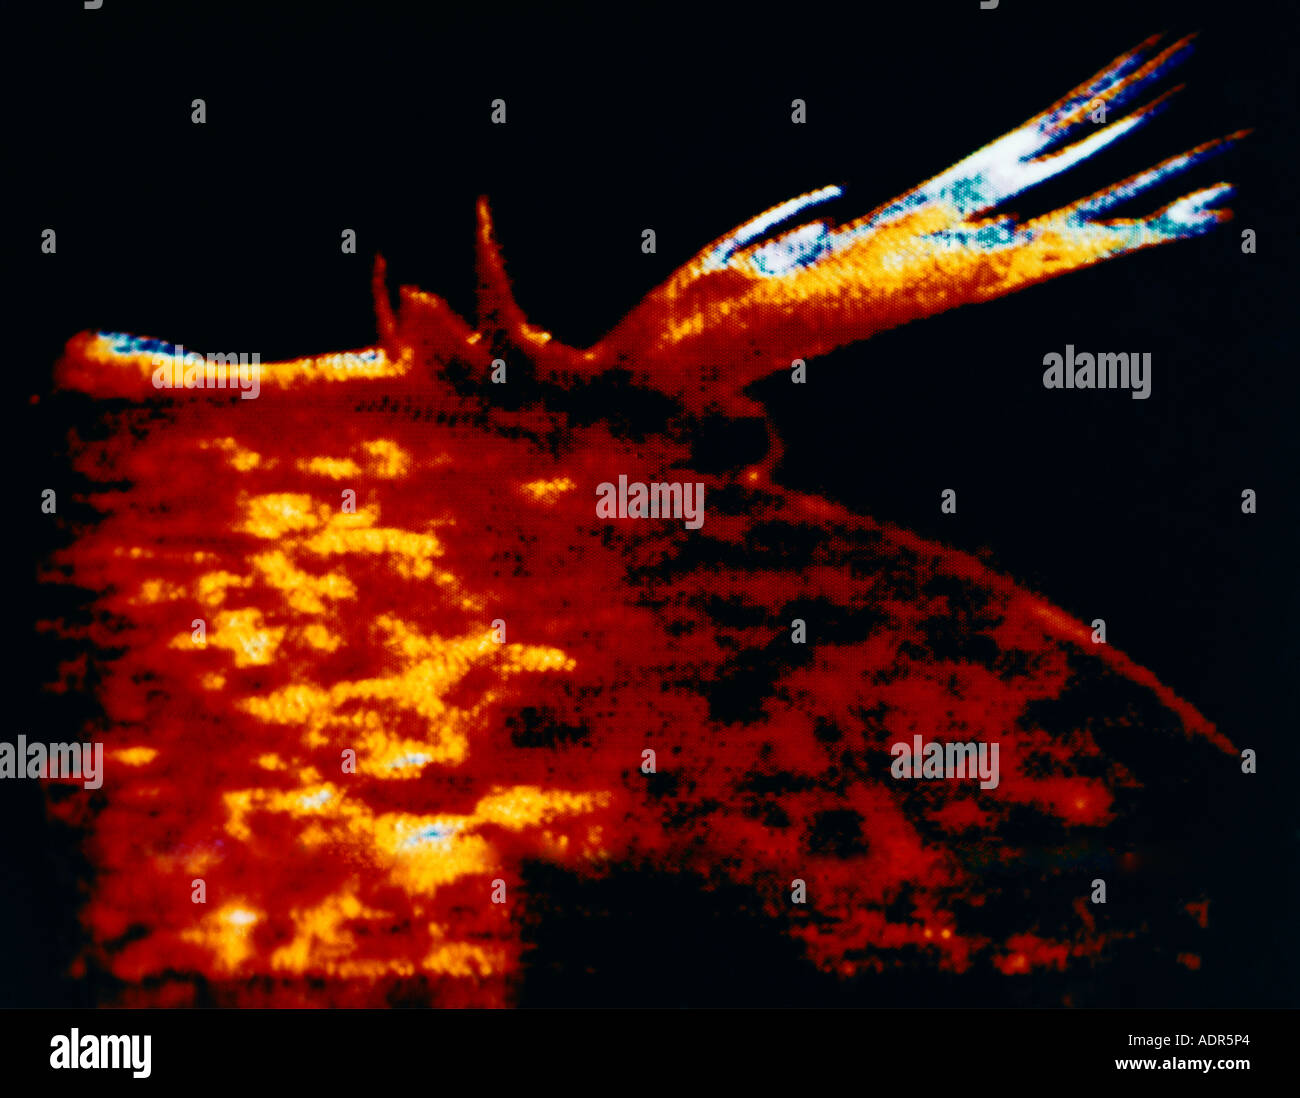 Spettroeliografia ultravioletta estrema che mostra la prominenza solare Foto Stock